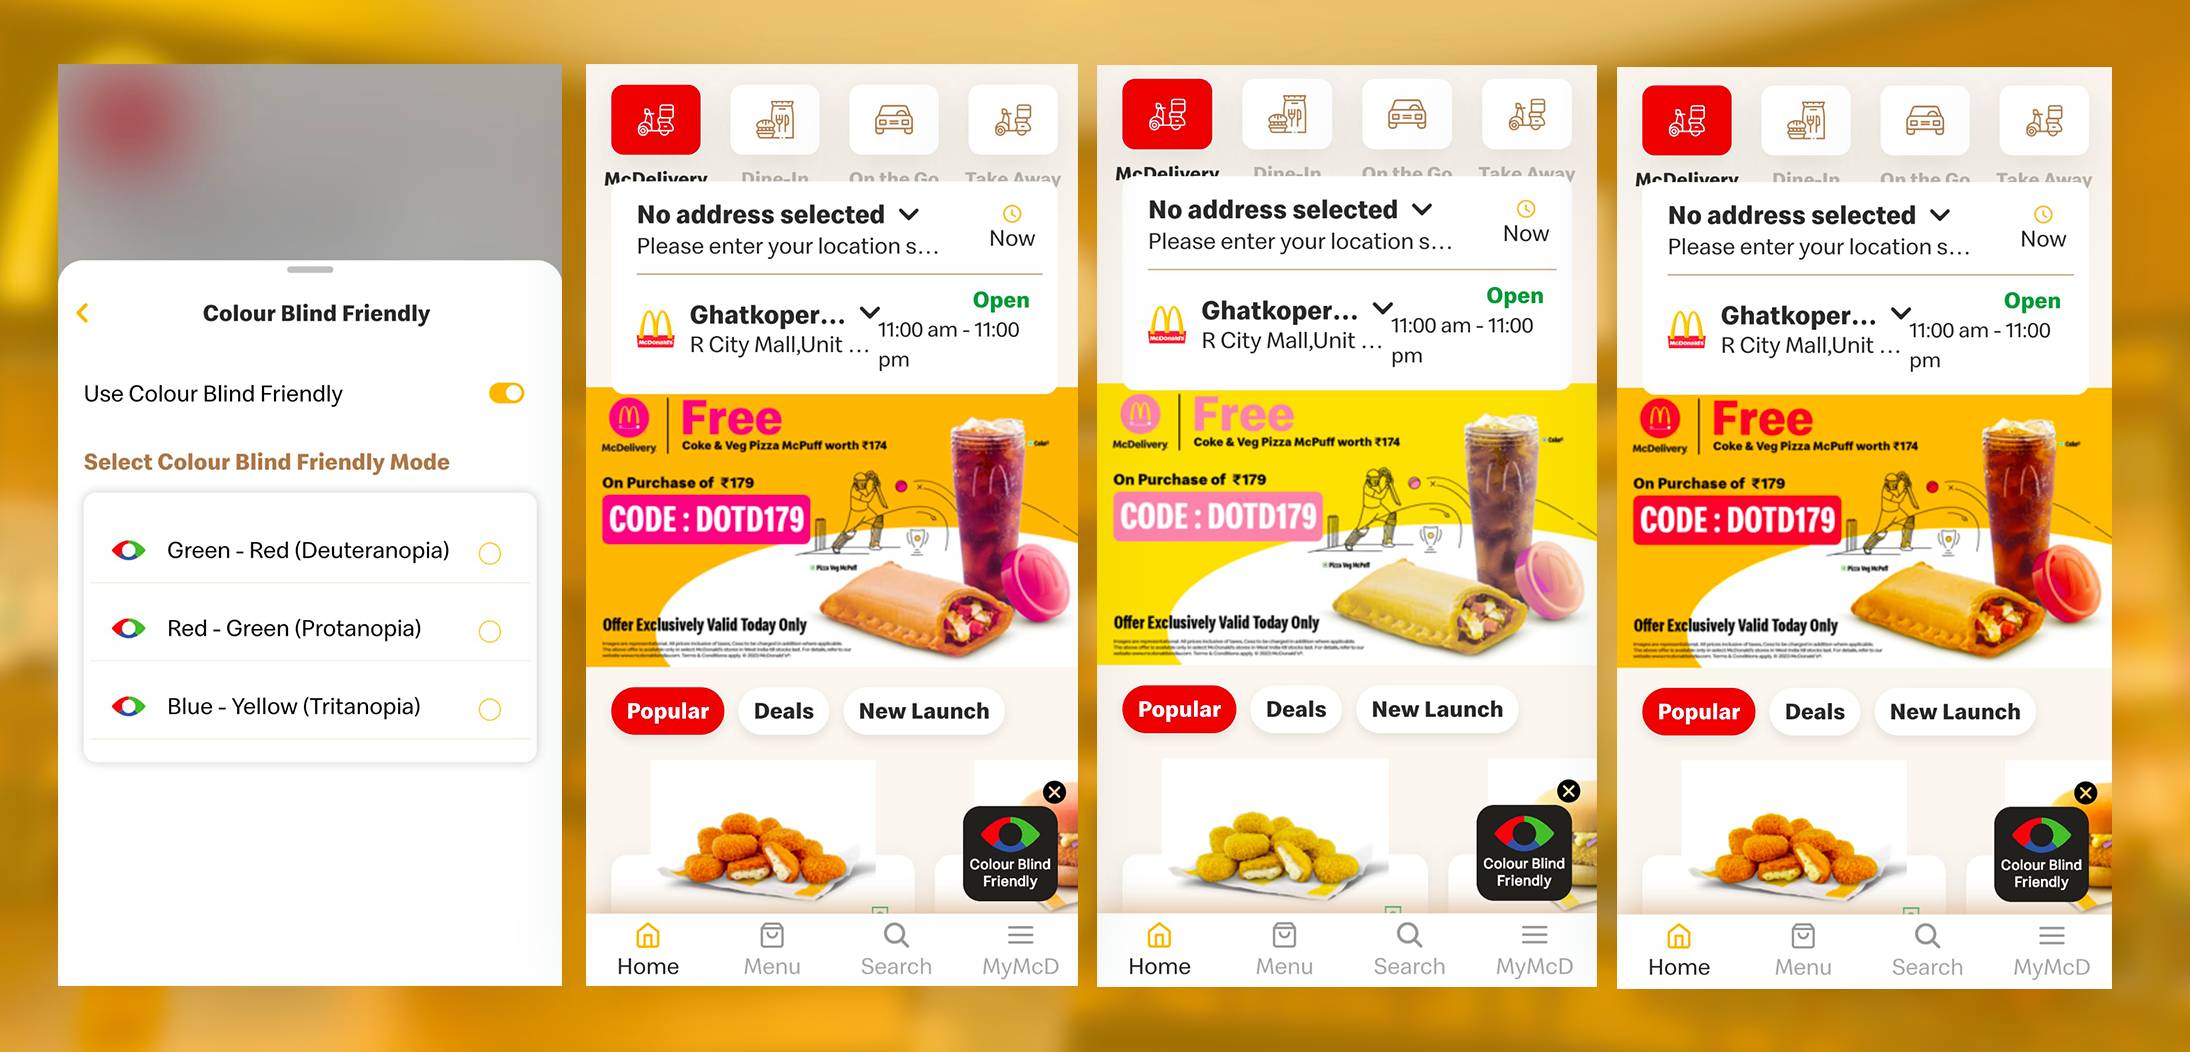 색맹 친화적인 앱에는 고객 경험을 향상시키기 위한 맥도날드 기능이 포함되어 있습니다.